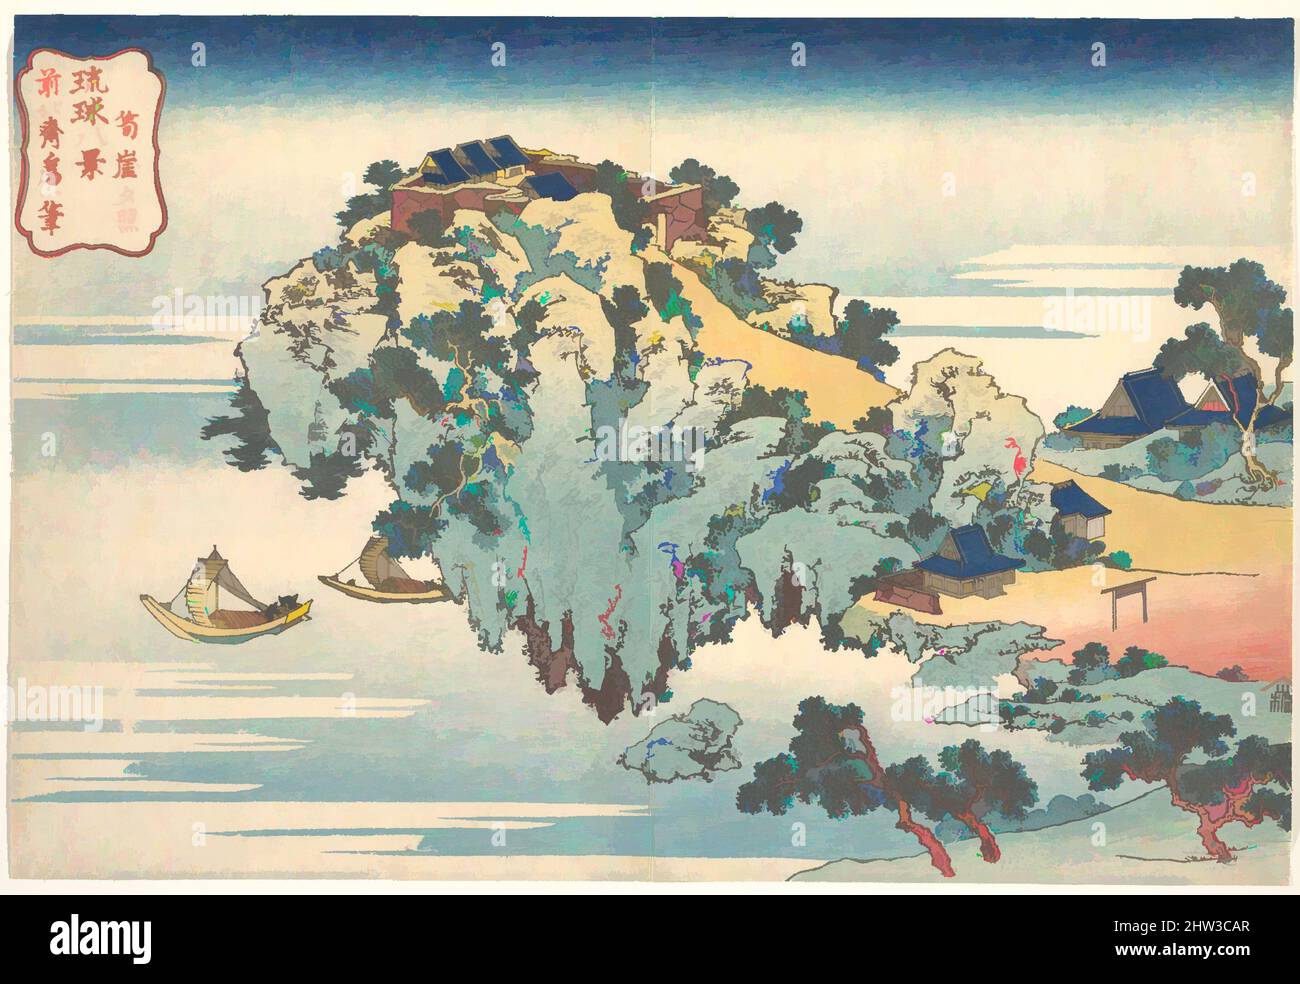 Arte ispirata da 琉球八景 筍崖夕照, serata Glow a Jungai (Jungai sekishō), dalla serie otto viste delle isole Ryūkyū (Ryūkyū hakkei), periodo Edo (1615–1868), ca. 1832, Giappone, stampa a blocchi di legno policromi; inchiostro e colore su carta, 9 7/8 x 14 1/2 pollici (25,1 x 36,8 cm), stampe, Katsushika, opere classiche modernizzate da Artotop con un tocco di modernità. Forme, colore e valore, impatto visivo accattivante sulle emozioni artistiche attraverso la libertà delle opere d'arte in modo contemporaneo. Un messaggio senza tempo che persegue una nuova direzione selvaggiamente creativa. Artisti che si rivolgono al supporto digitale e creano l'NFT Artotop Foto Stock